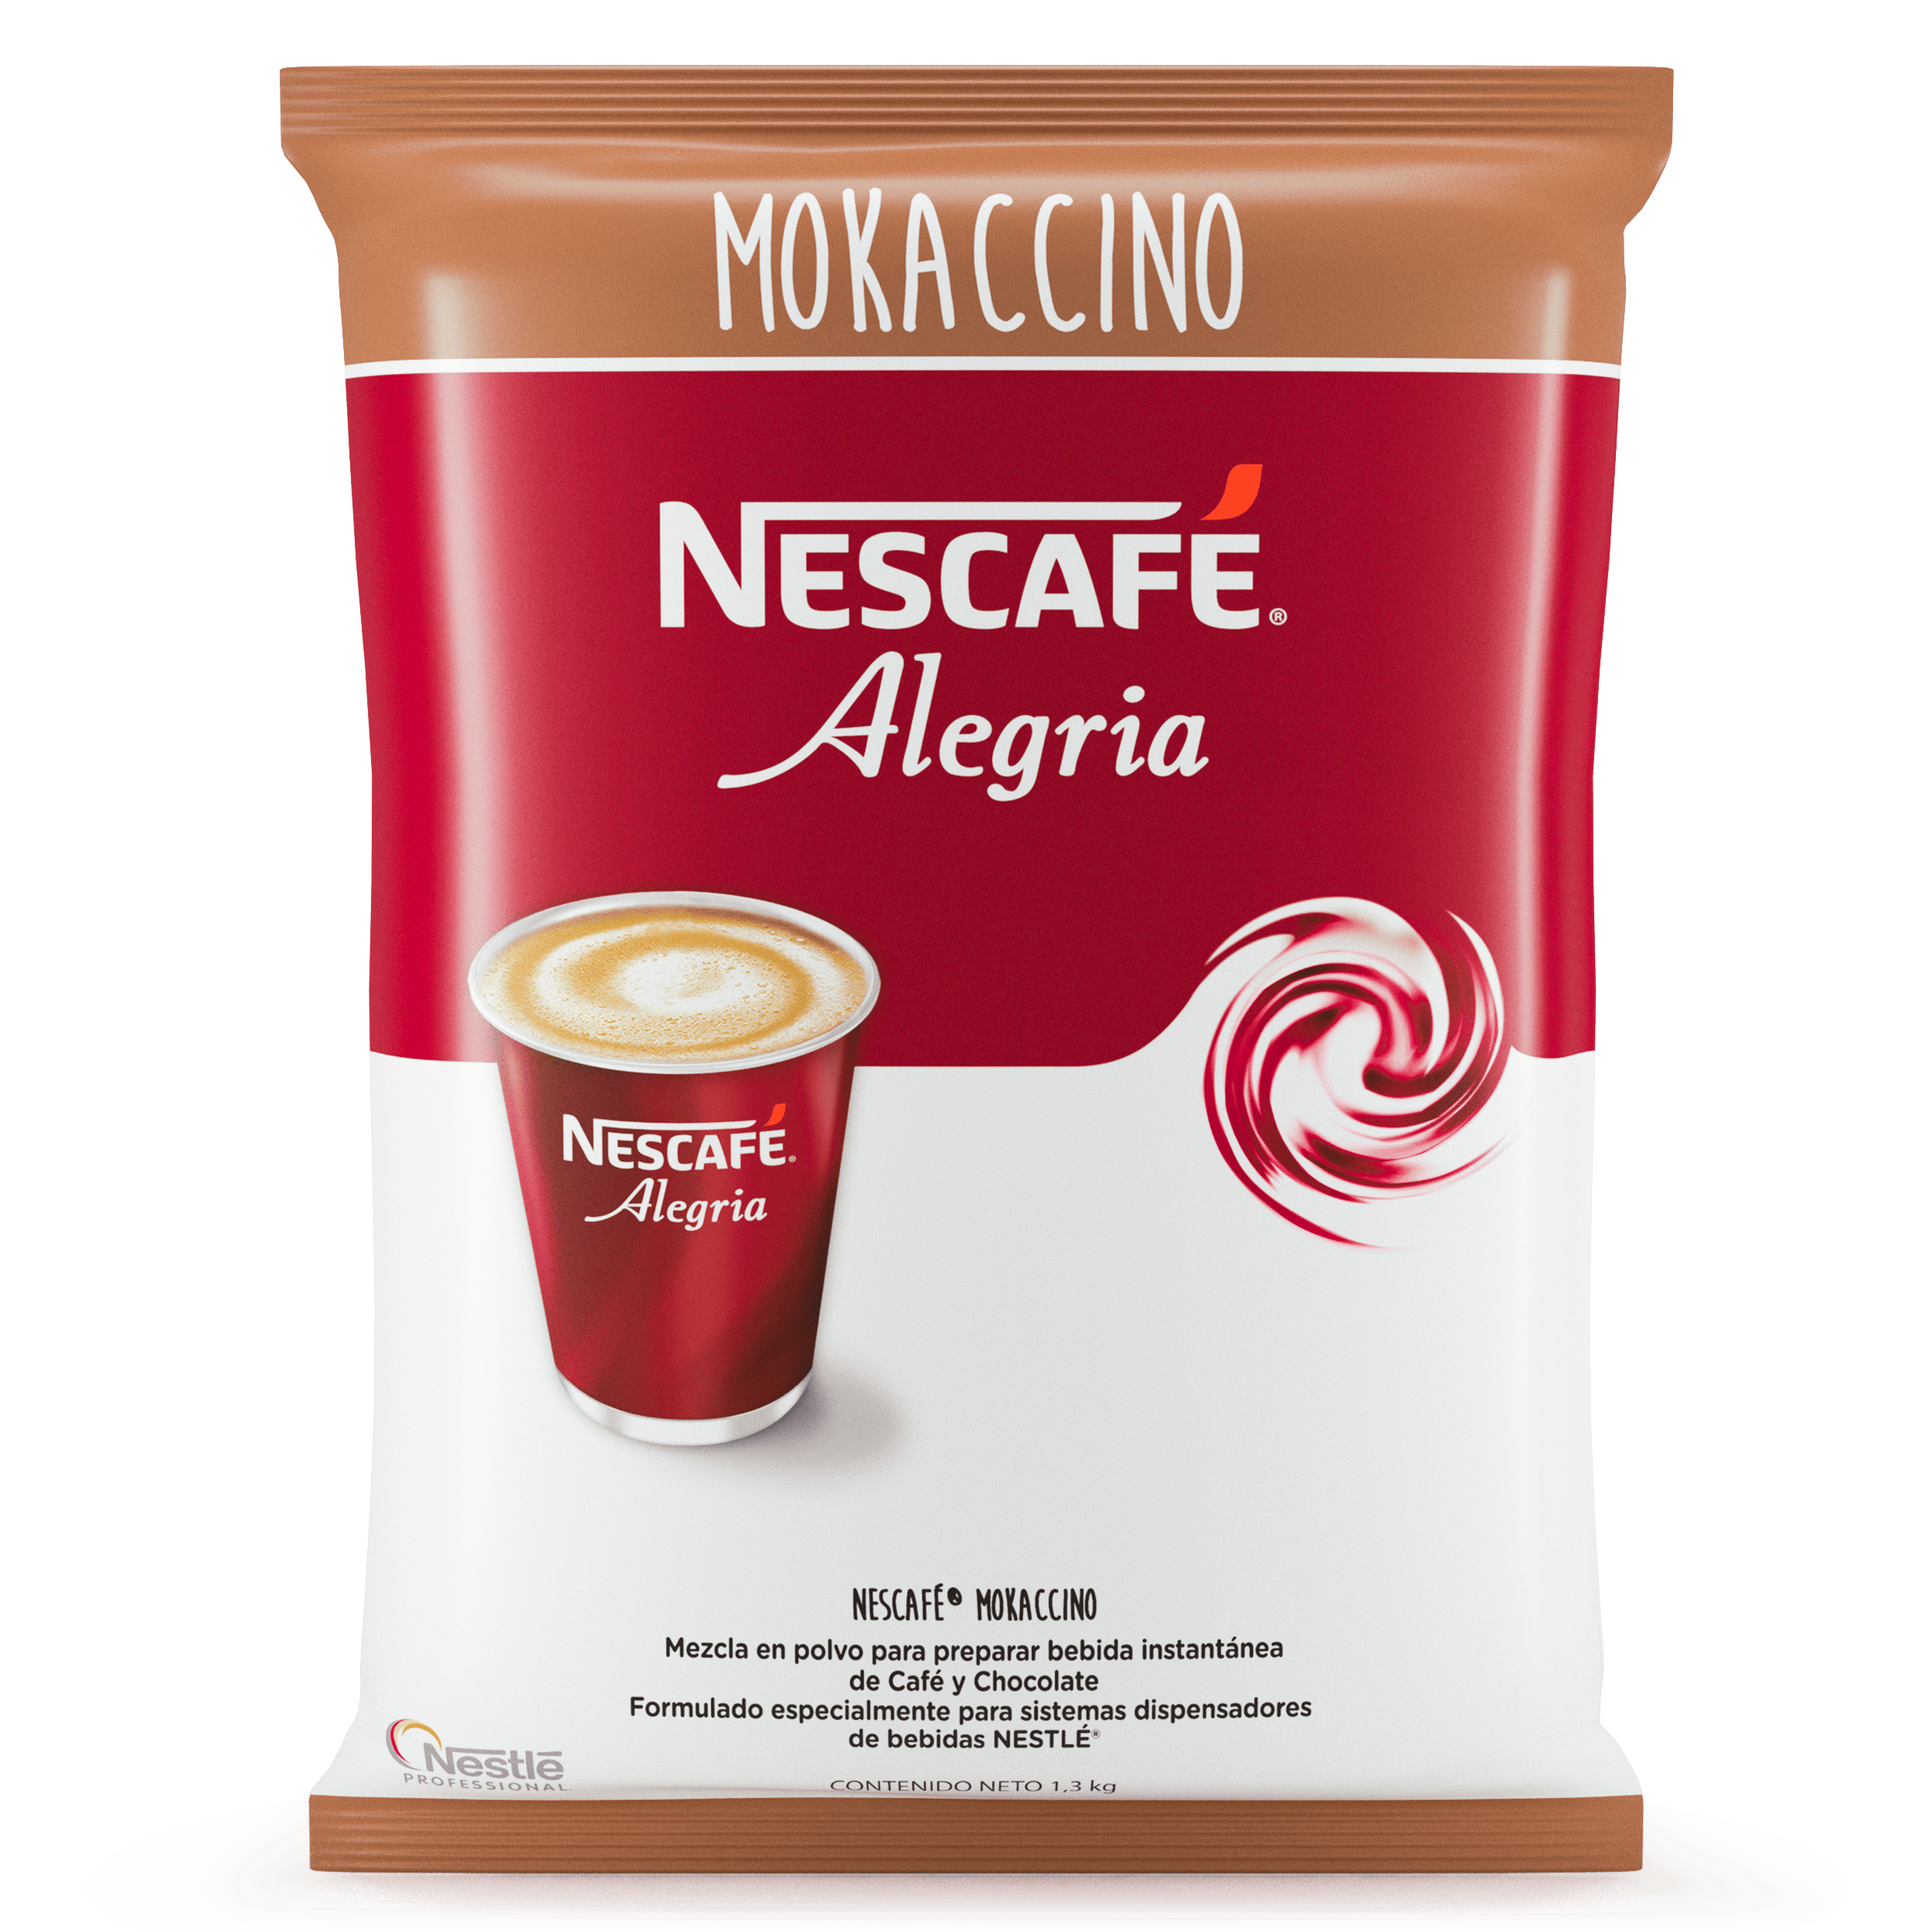 Nescafé Café en Grano 1kg